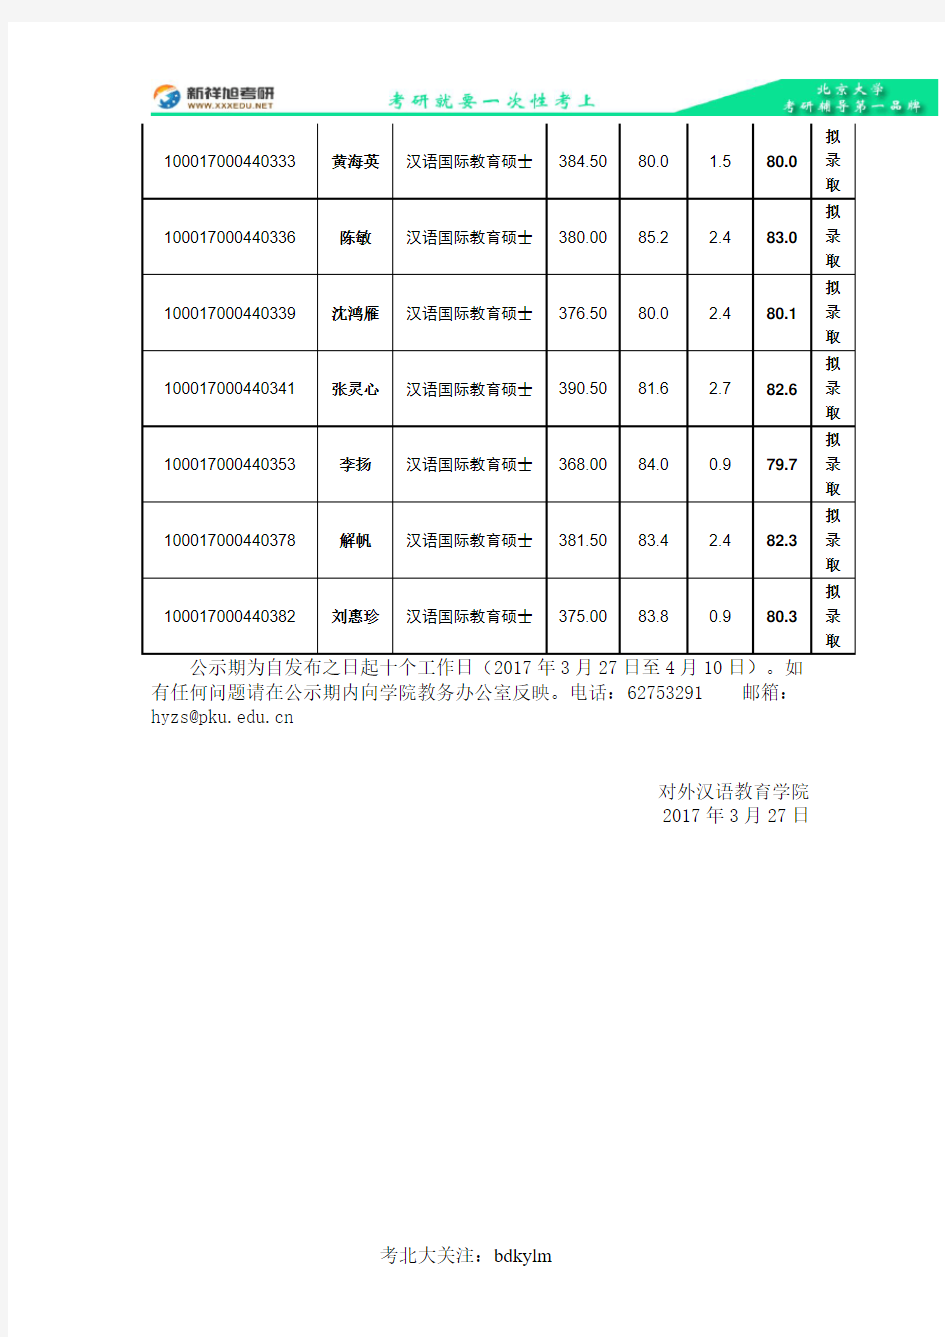 2017年北京大学对外汉语教育学院内地硕士研究生拟录取公示名单